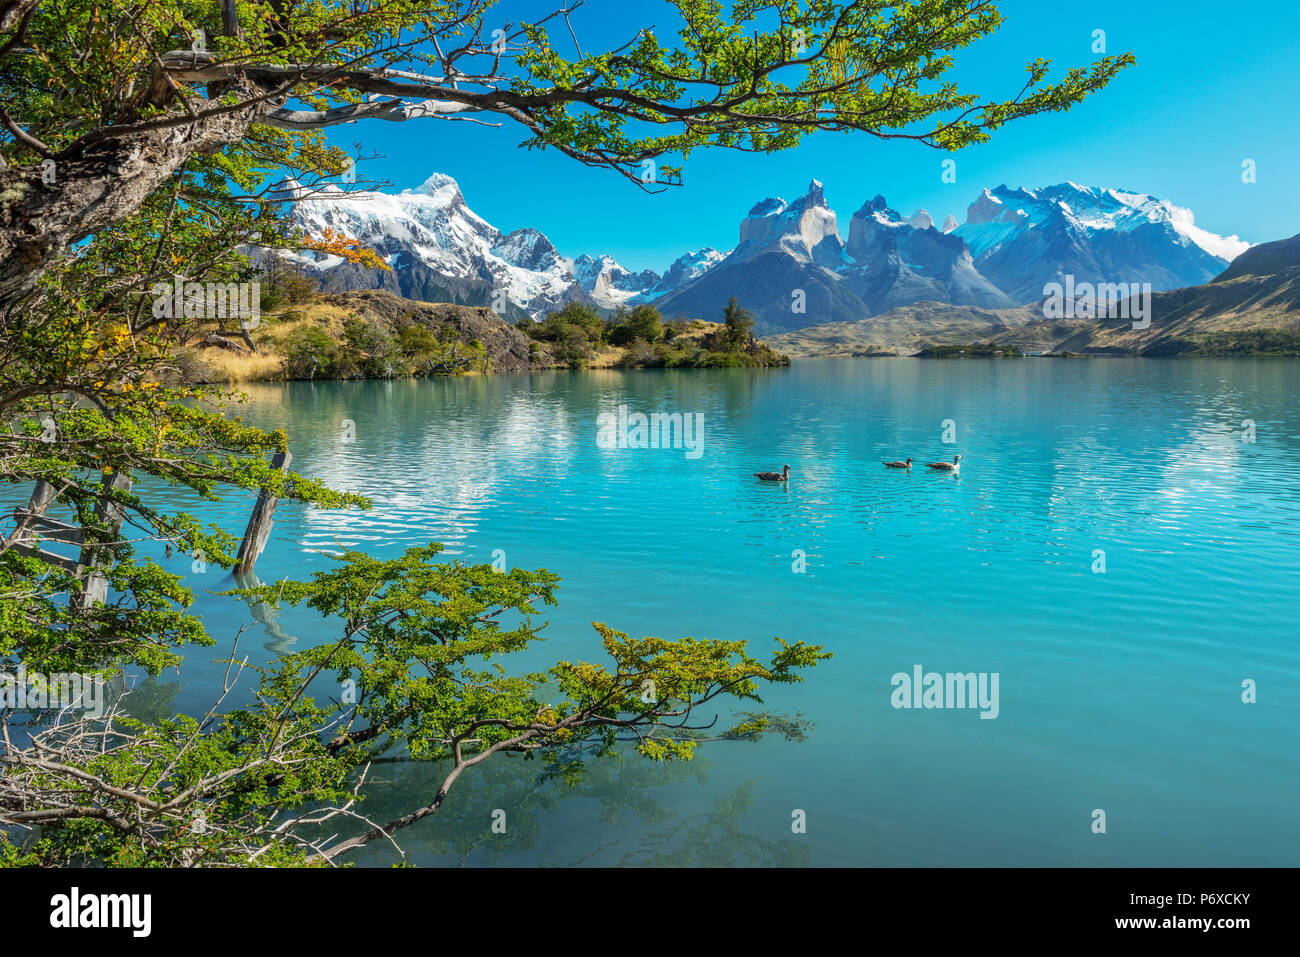 South America, Patagonia, Chile, Region de Magallanes y de la Antartica, Torres del Paine, National Park, Lago Pehoe and Los Cuernos Stock Photo